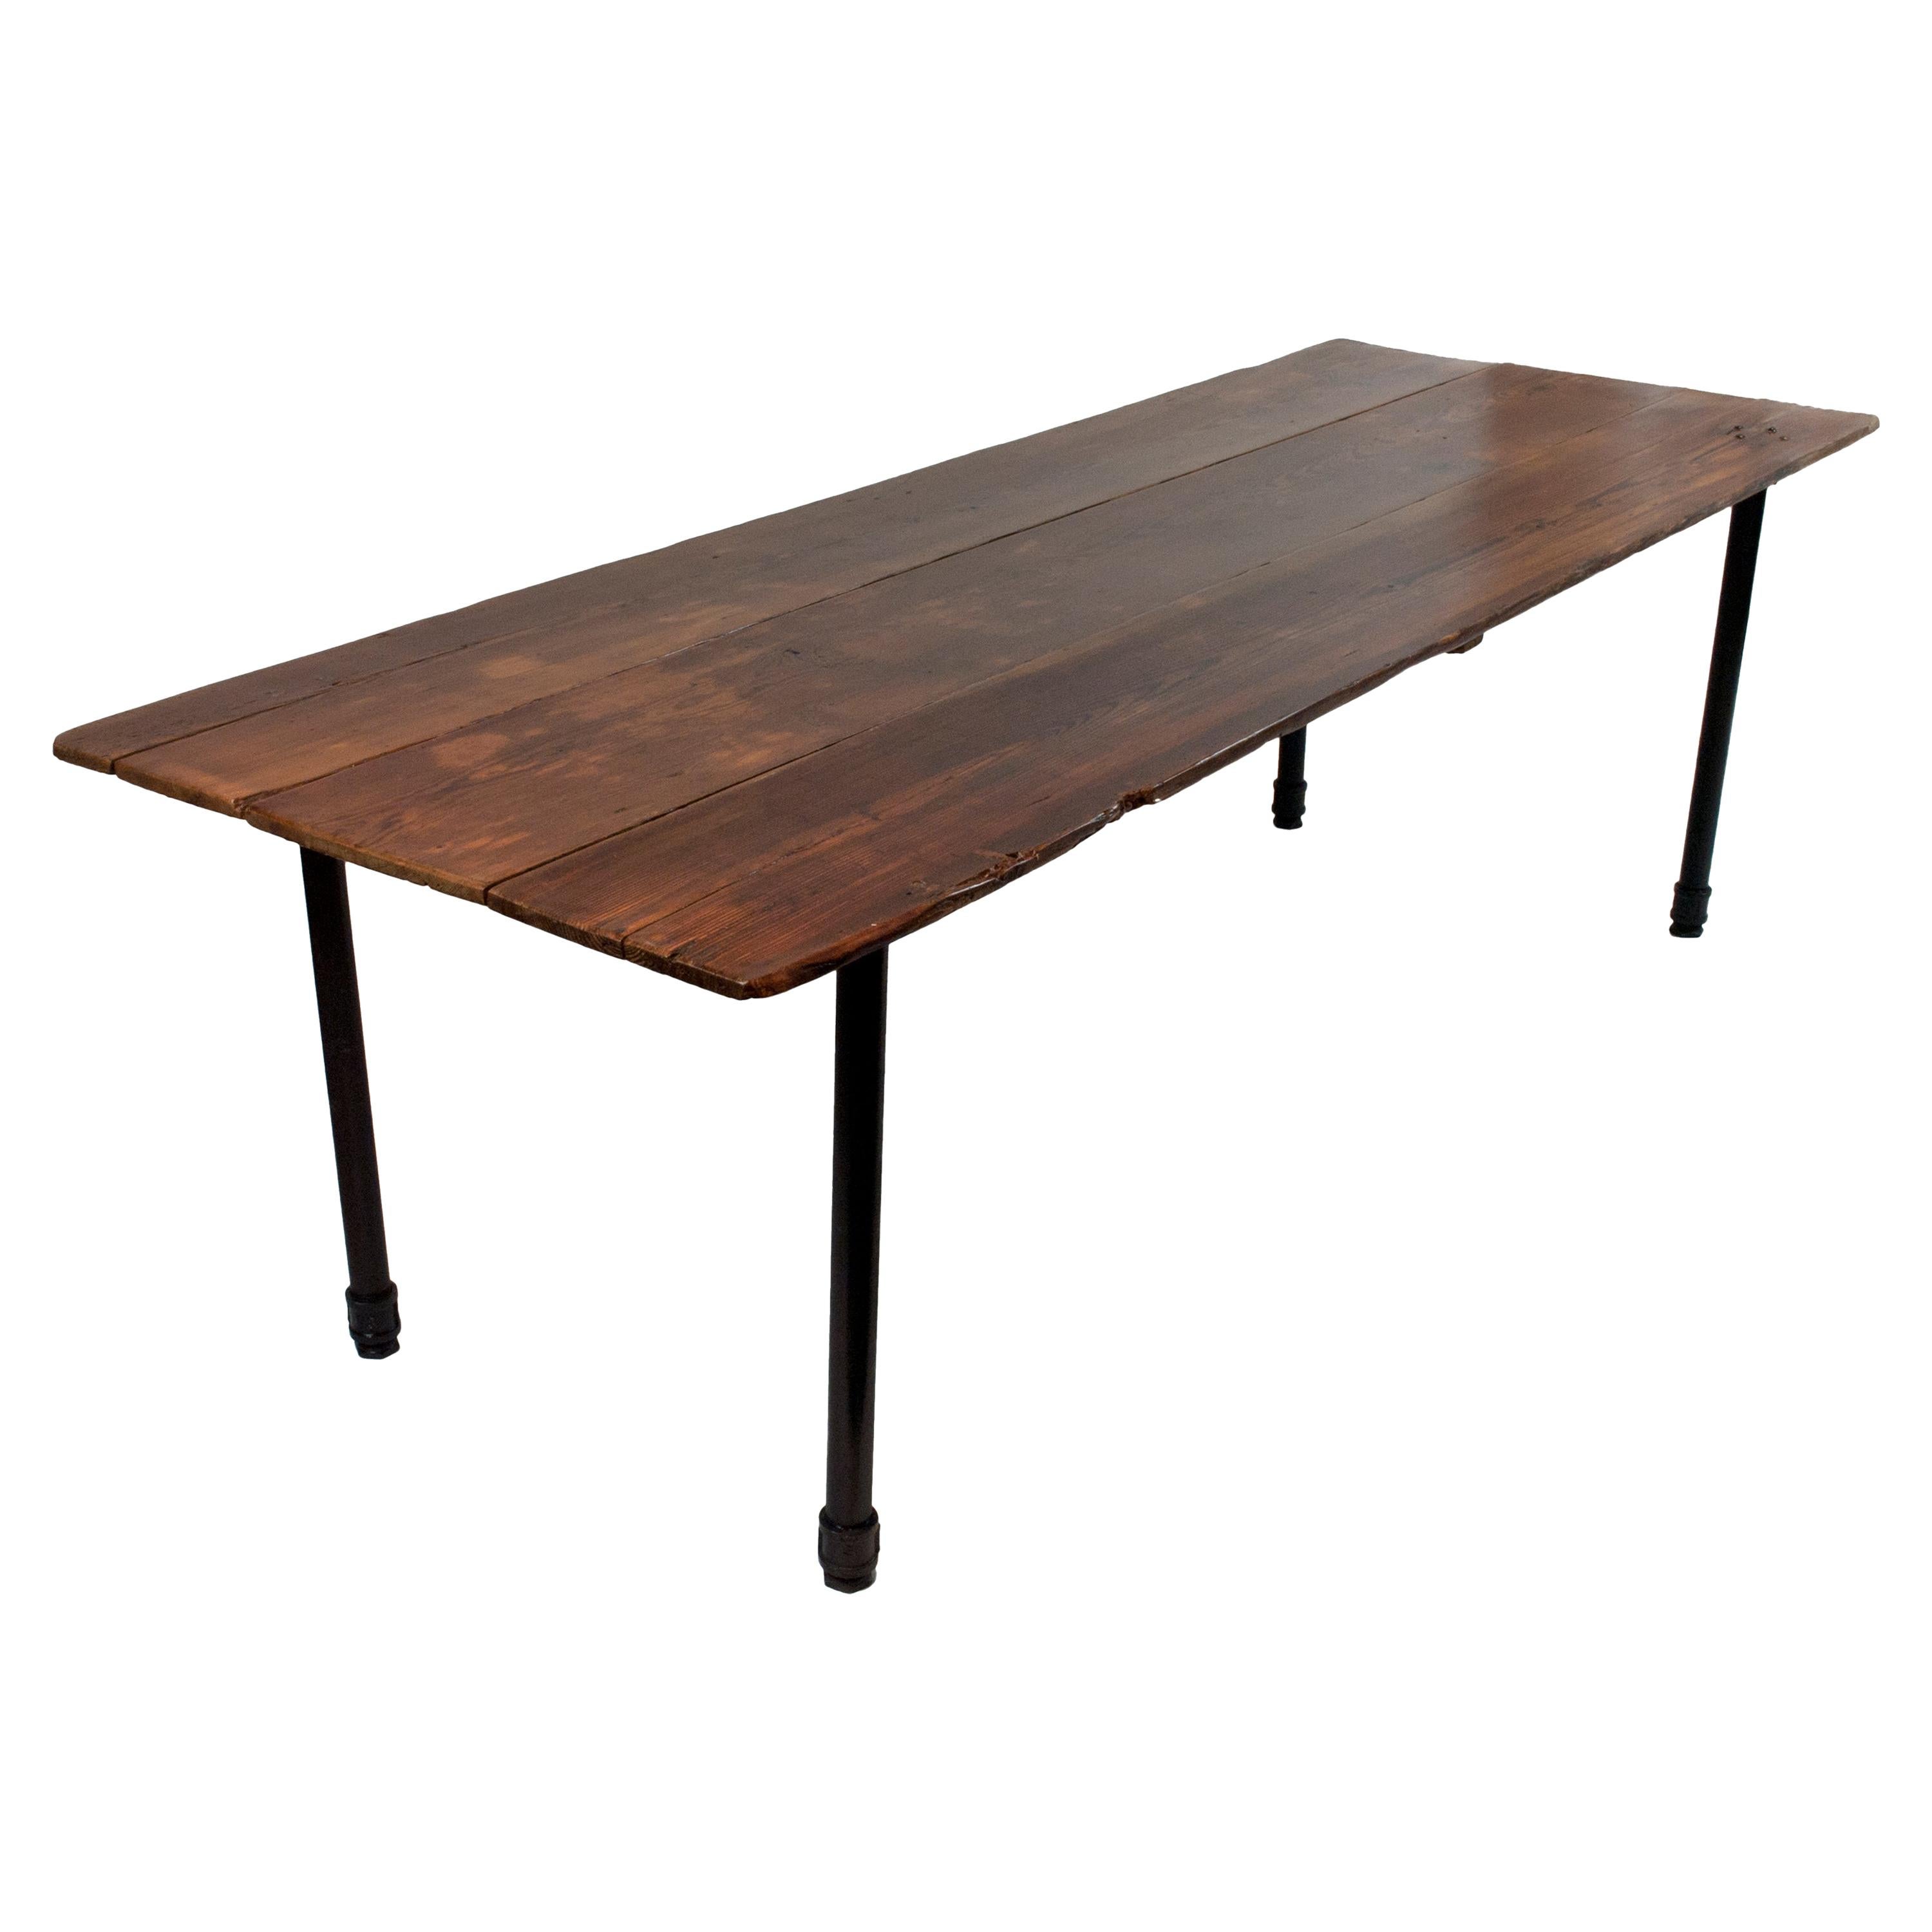 Vintage Reclaimed Wood Plank Table on Industrial Metal Legs